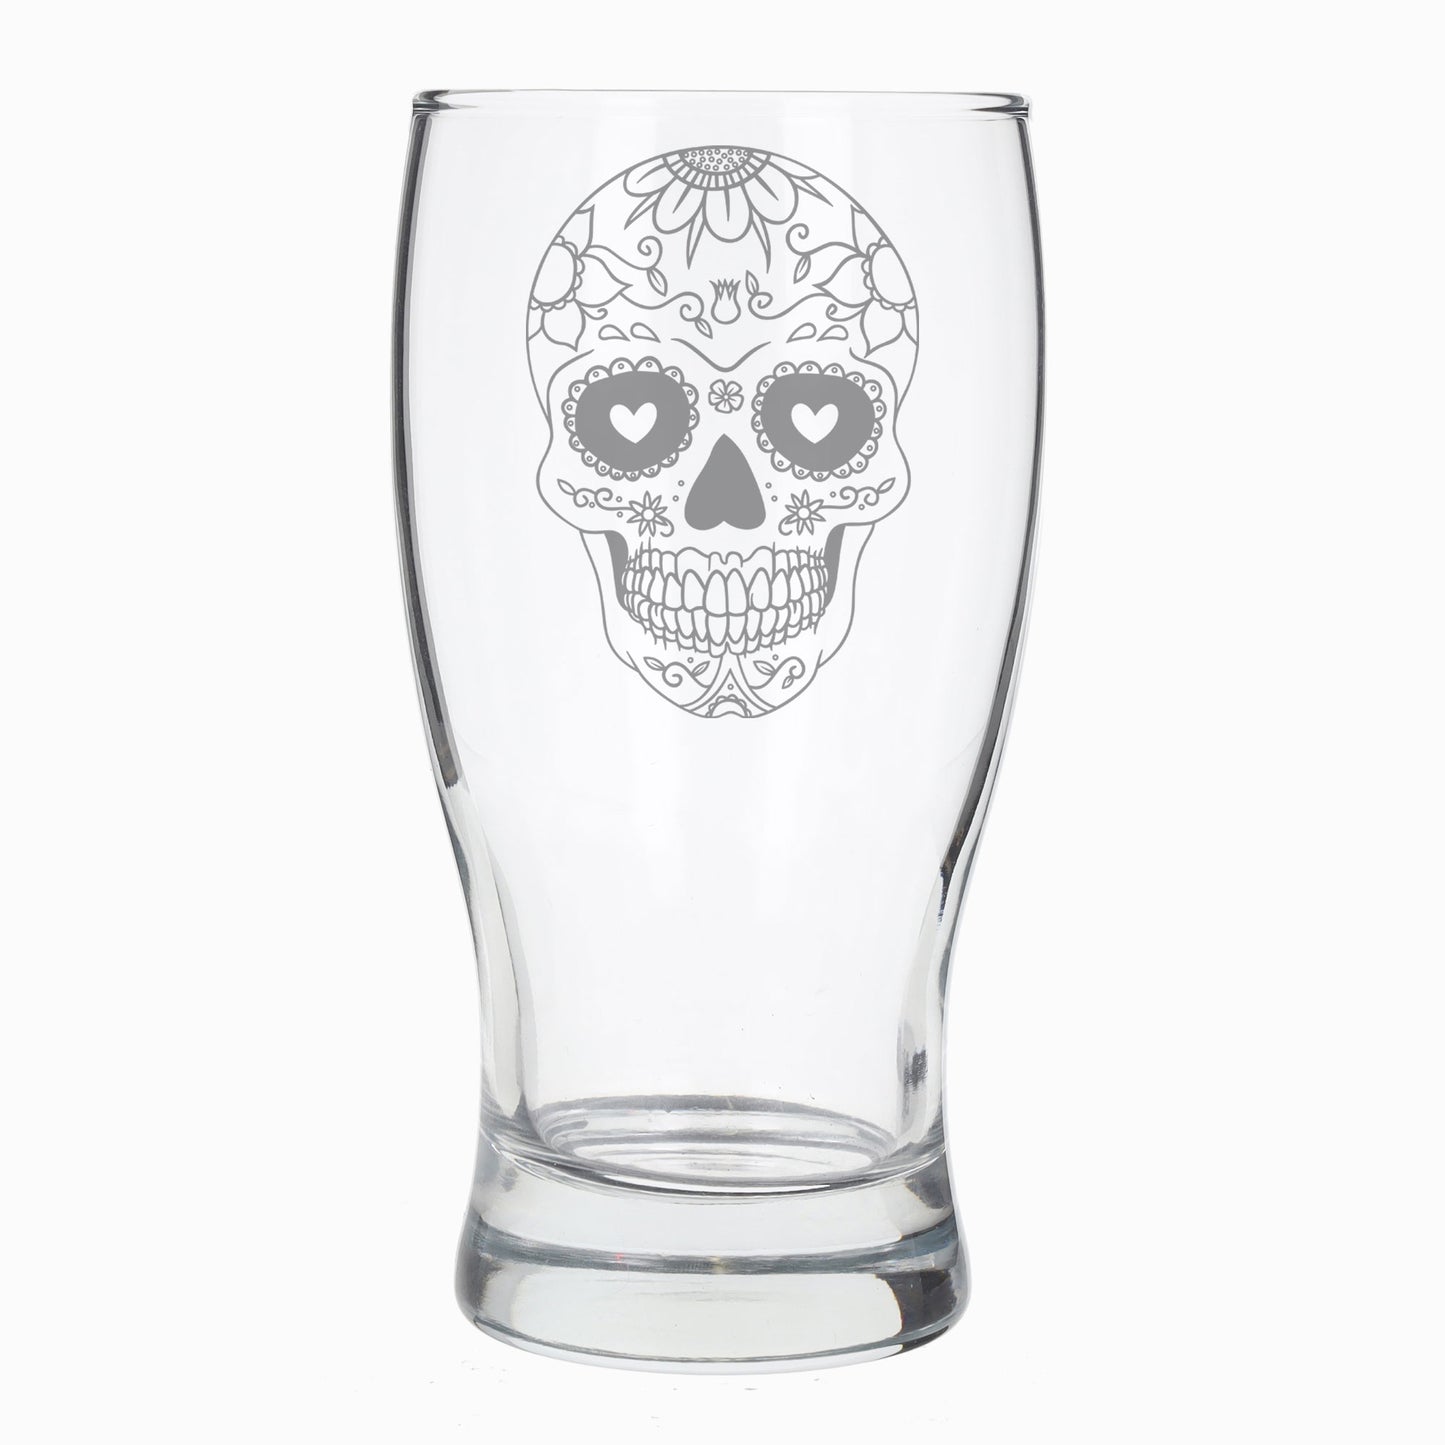 Engraved Sugar Skull Pint Glass  - Always Looking Good -   